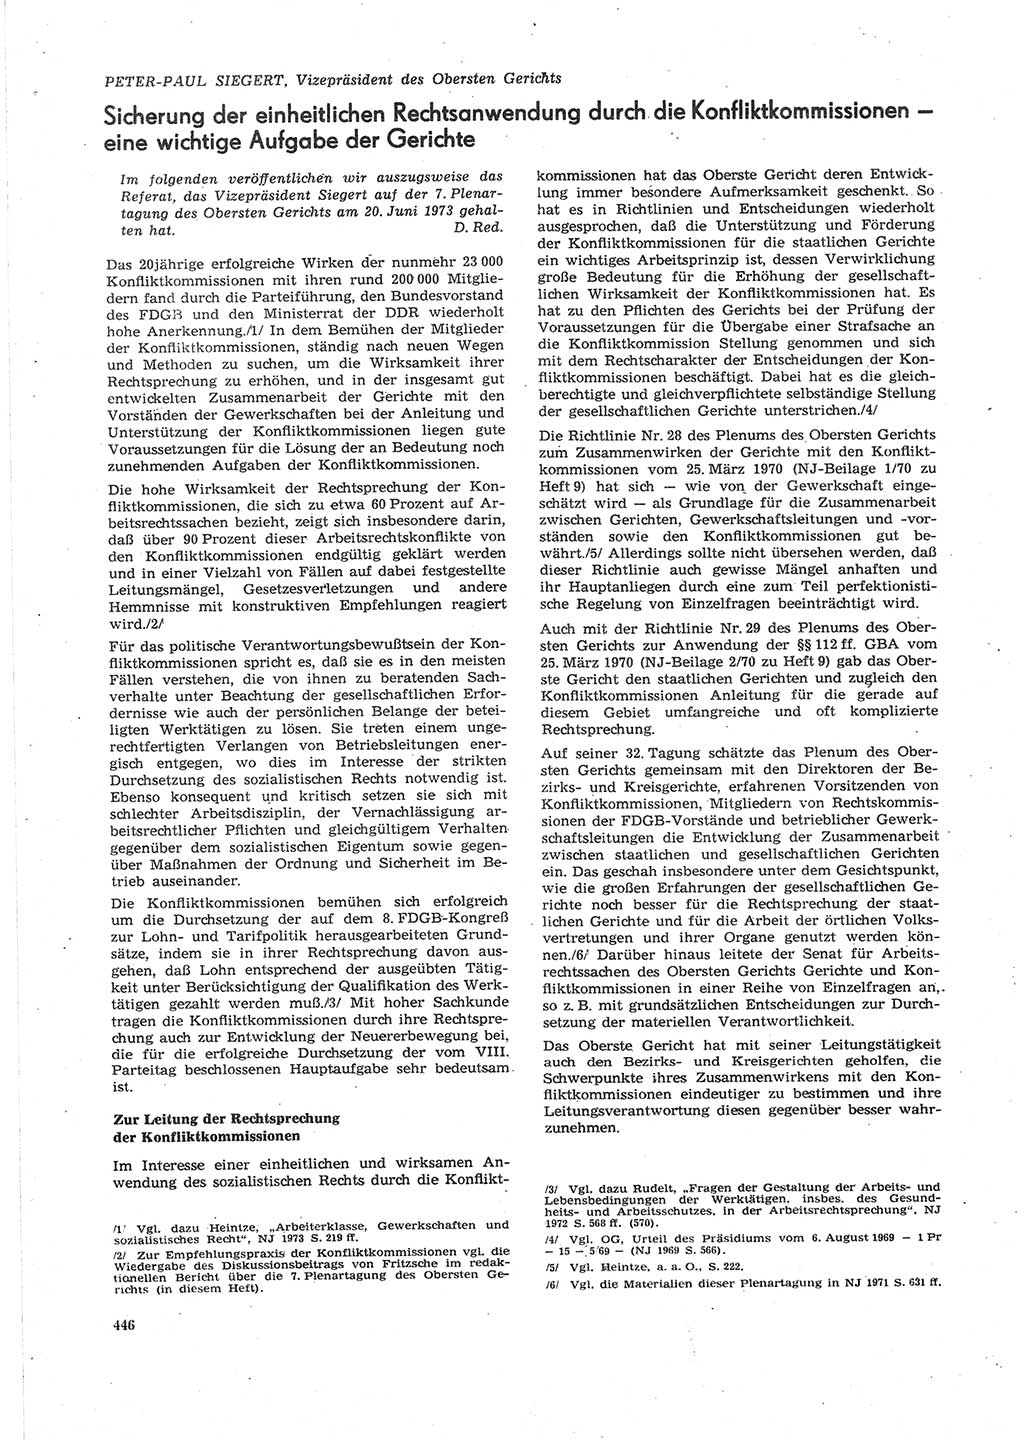 Neue Justiz (NJ), Zeitschrift für Recht und Rechtswissenschaft [Deutsche Demokratische Republik (DDR)], 27. Jahrgang 1973, Seite 446 (NJ DDR 1973, S. 446)